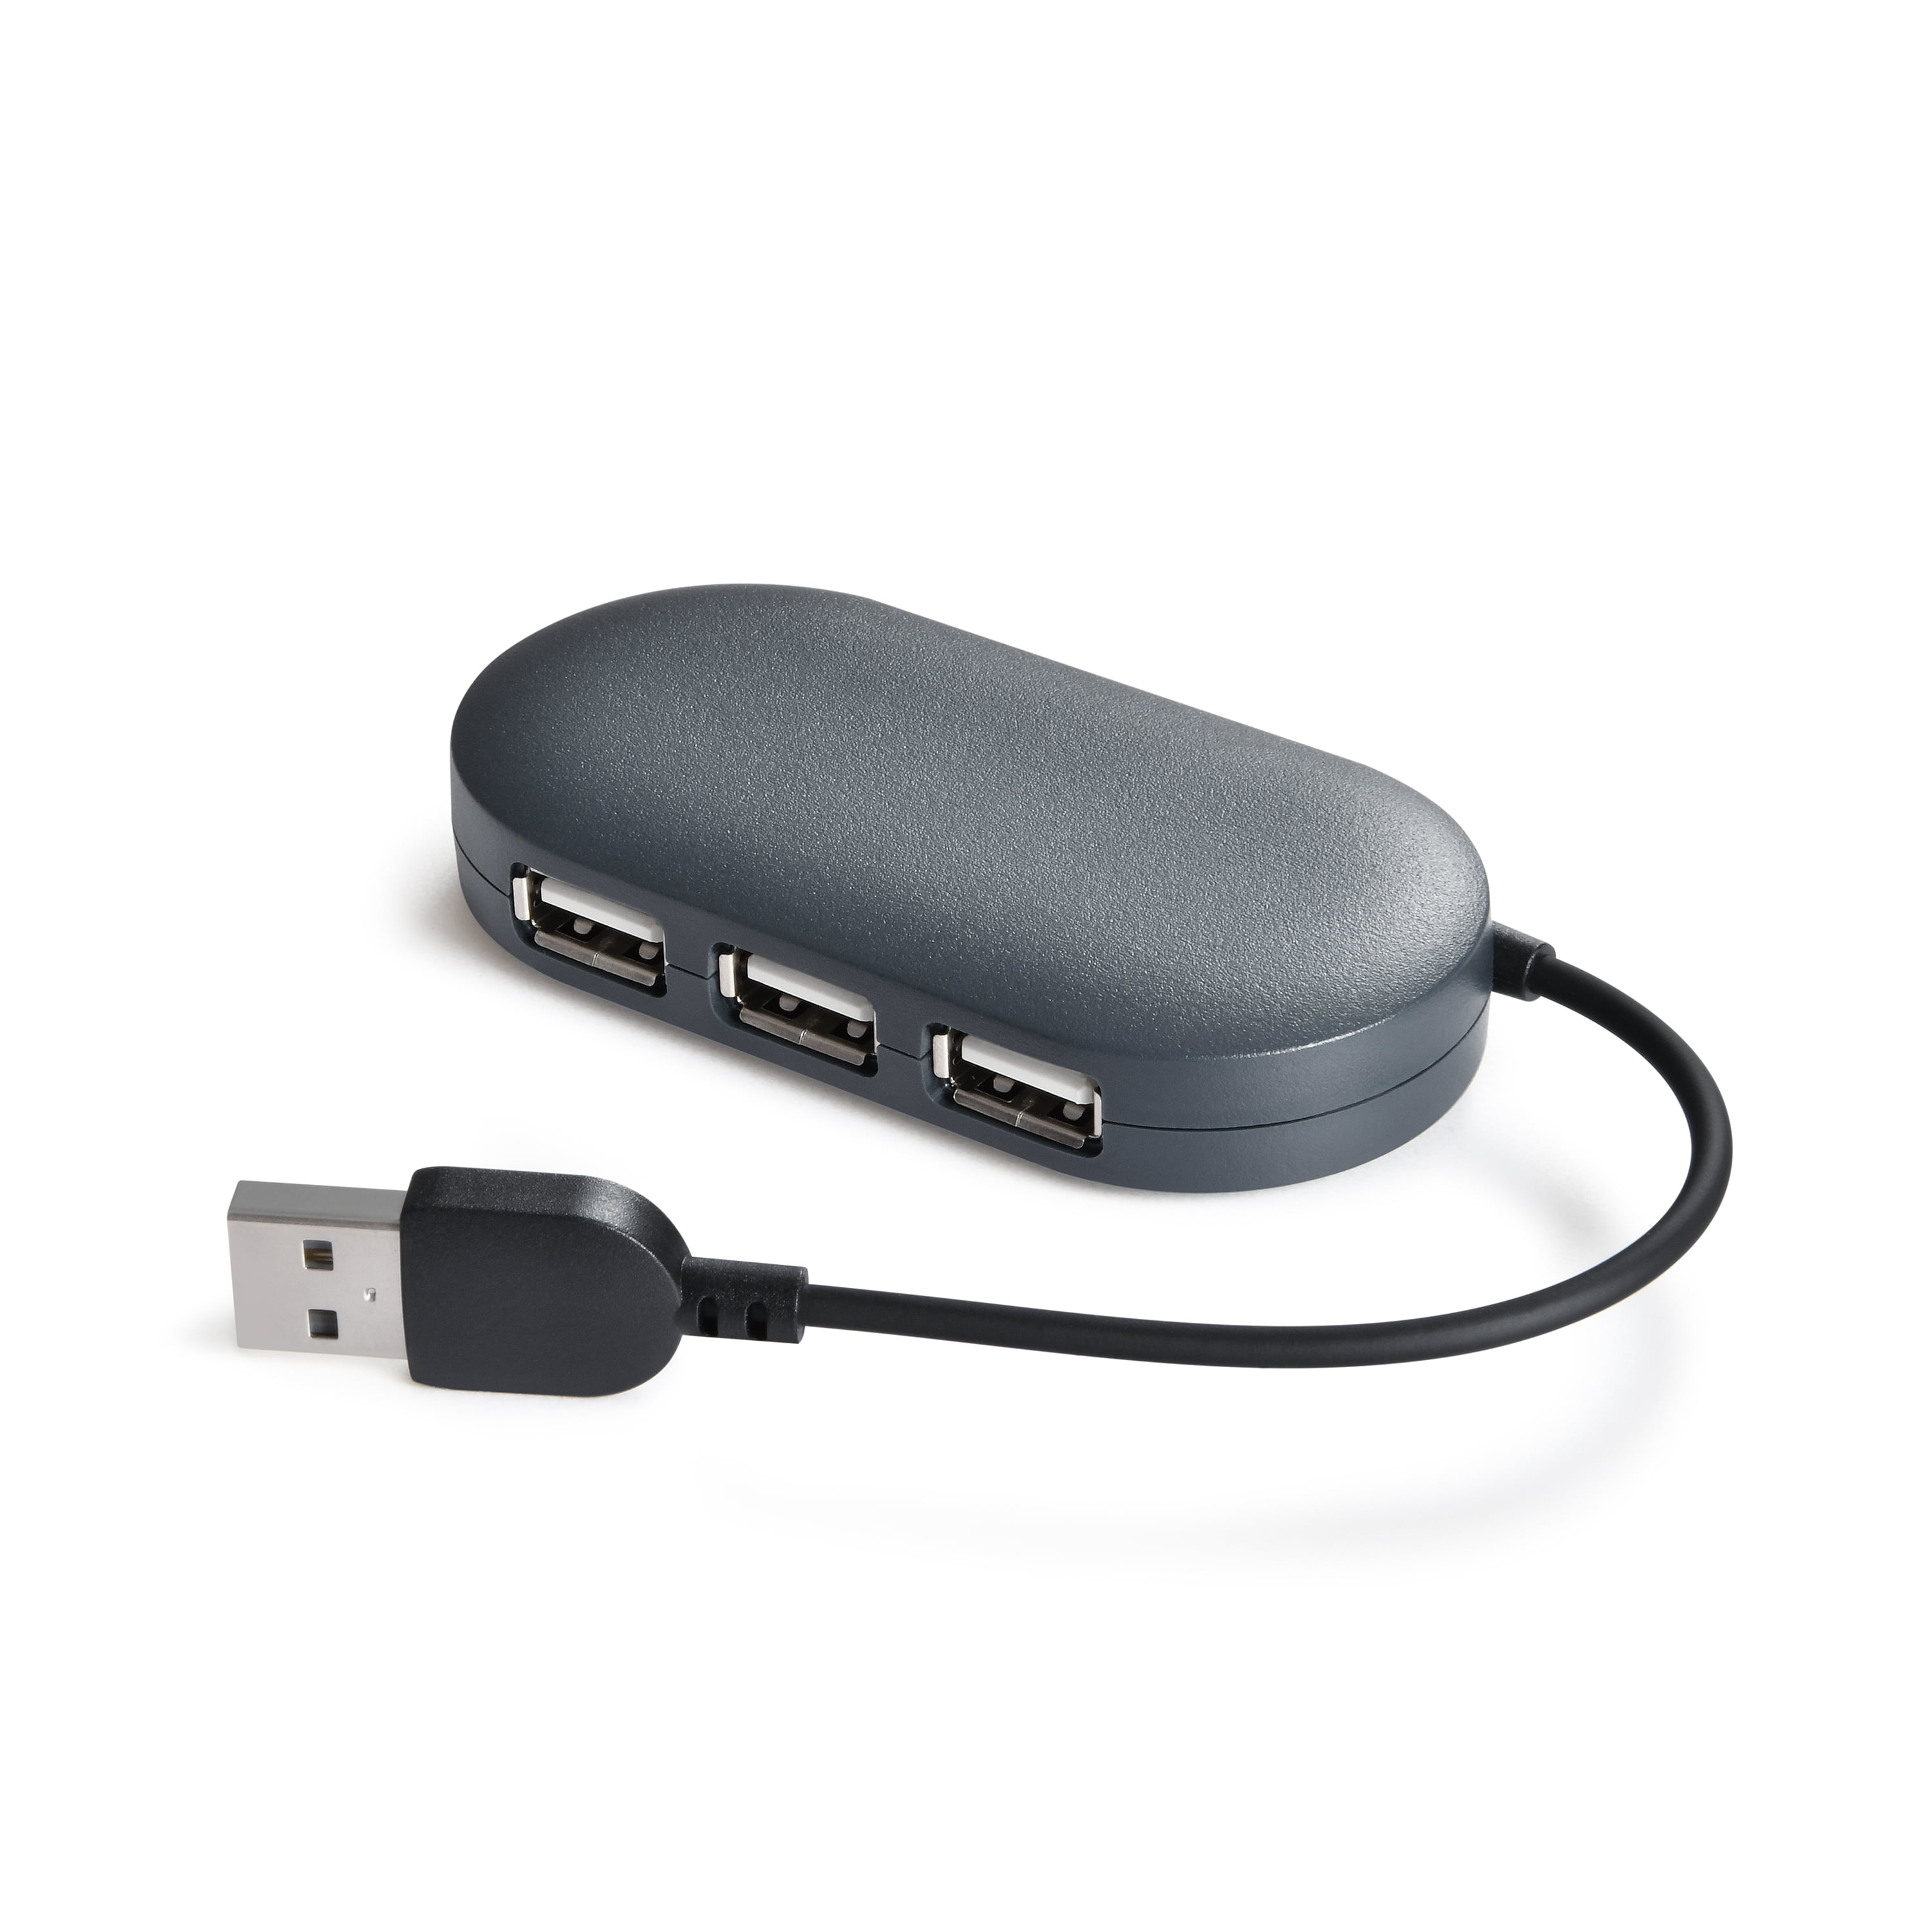 Cable Matters Ultra Mini 4 Port USB Hub (USB 3.0 Hub, USB 3 Hub)